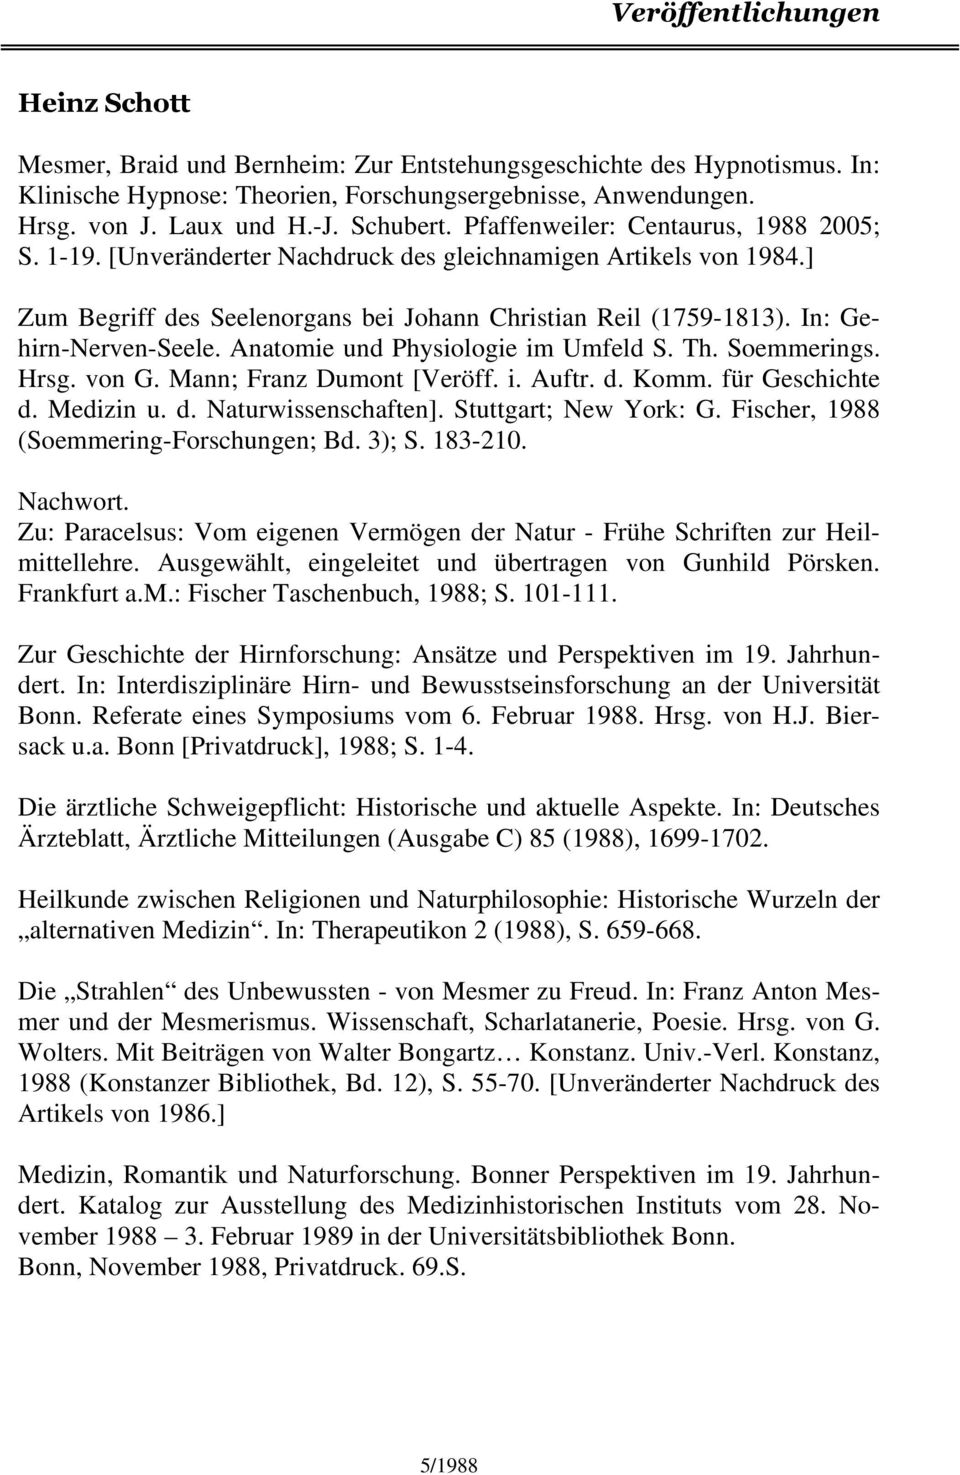 In: Gehirn-Nerven-Seele. Anatomie und Physiologie im Umfeld S. Th. Soemmerings. Hrsg. von G. Mann; Franz Dumont [Veröff. i. Auftr. d. Komm. für Geschichte d. Medizin u. d. Naturwissenschaften].